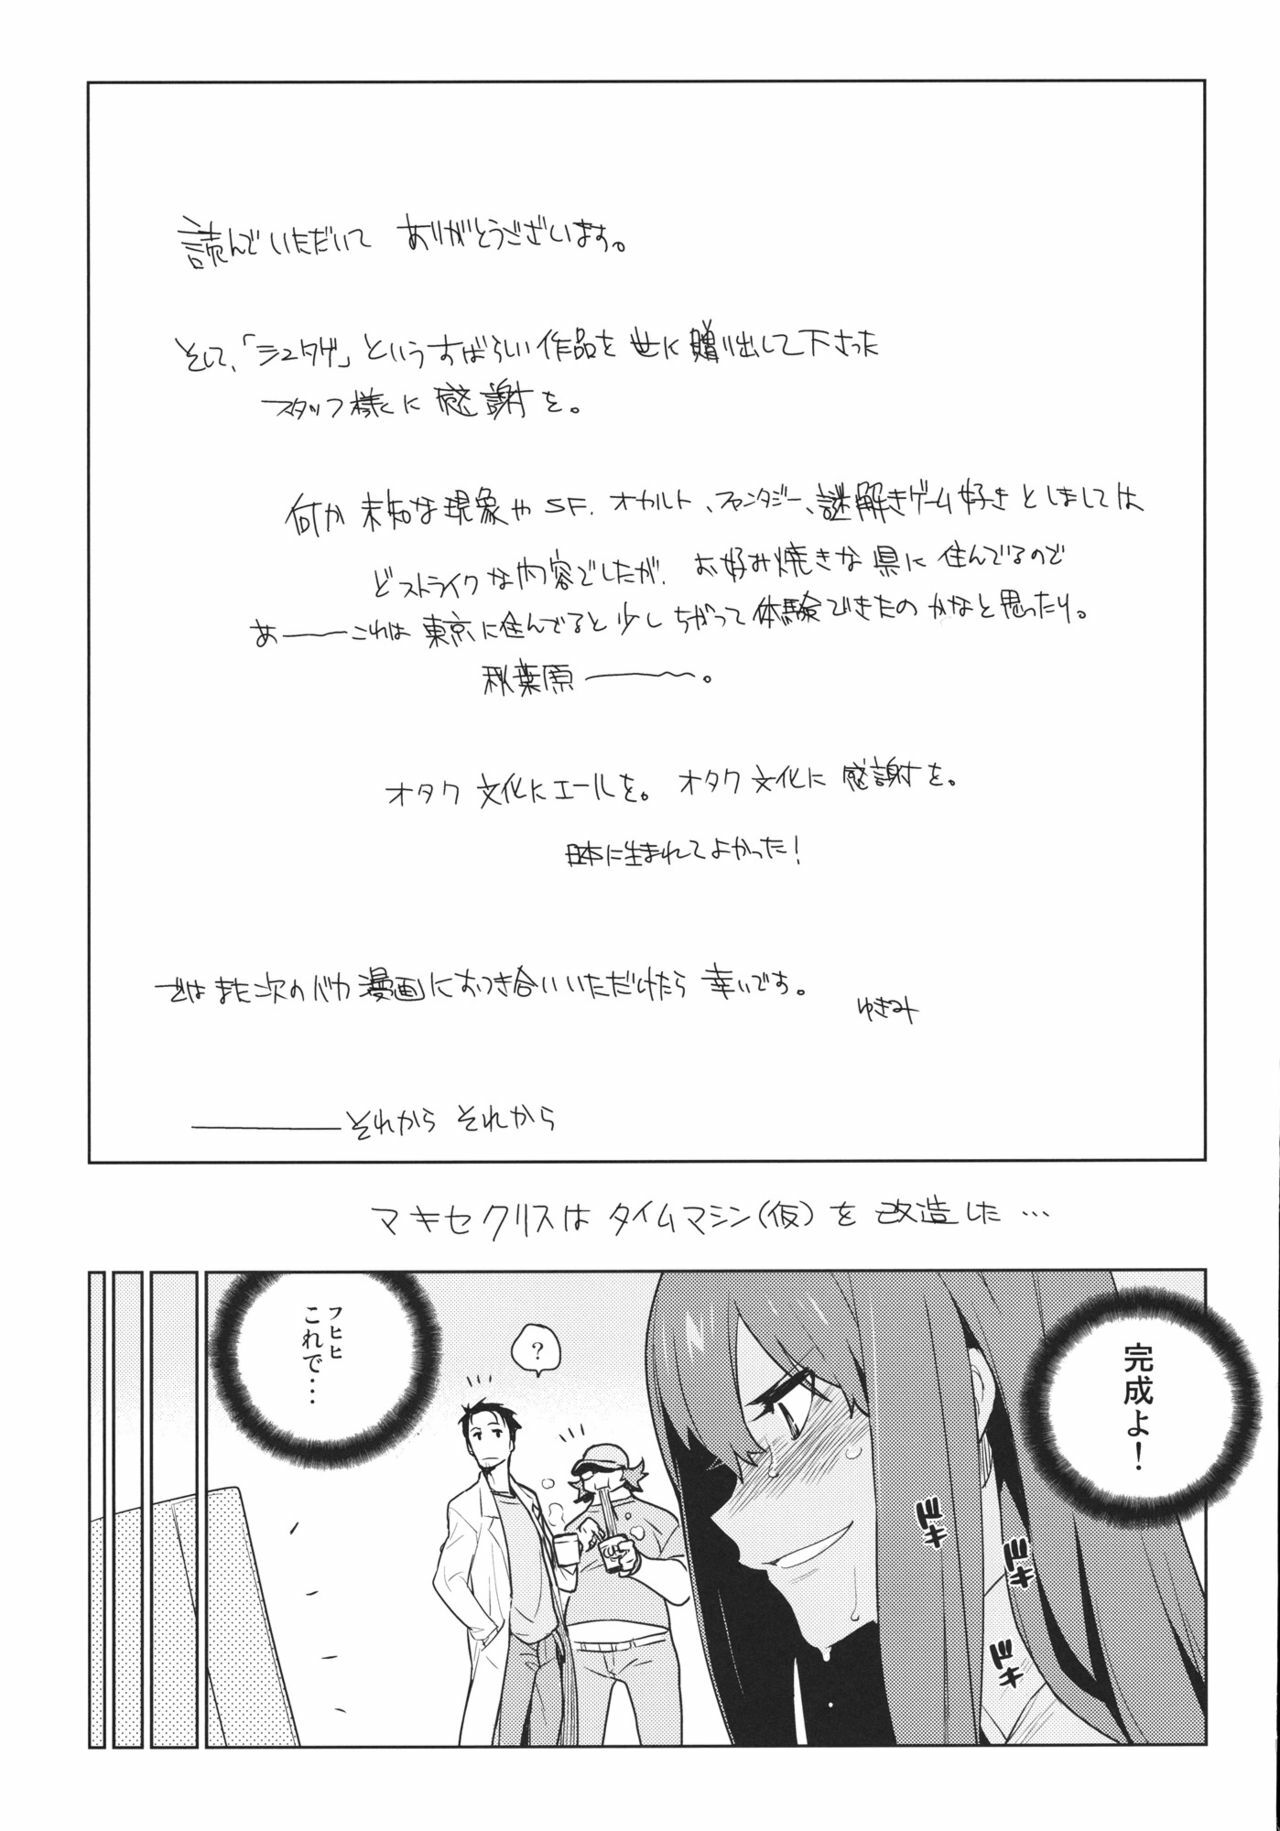 [enuma elish (Yukimi)] OCD (Steins;Gate) page 13 full